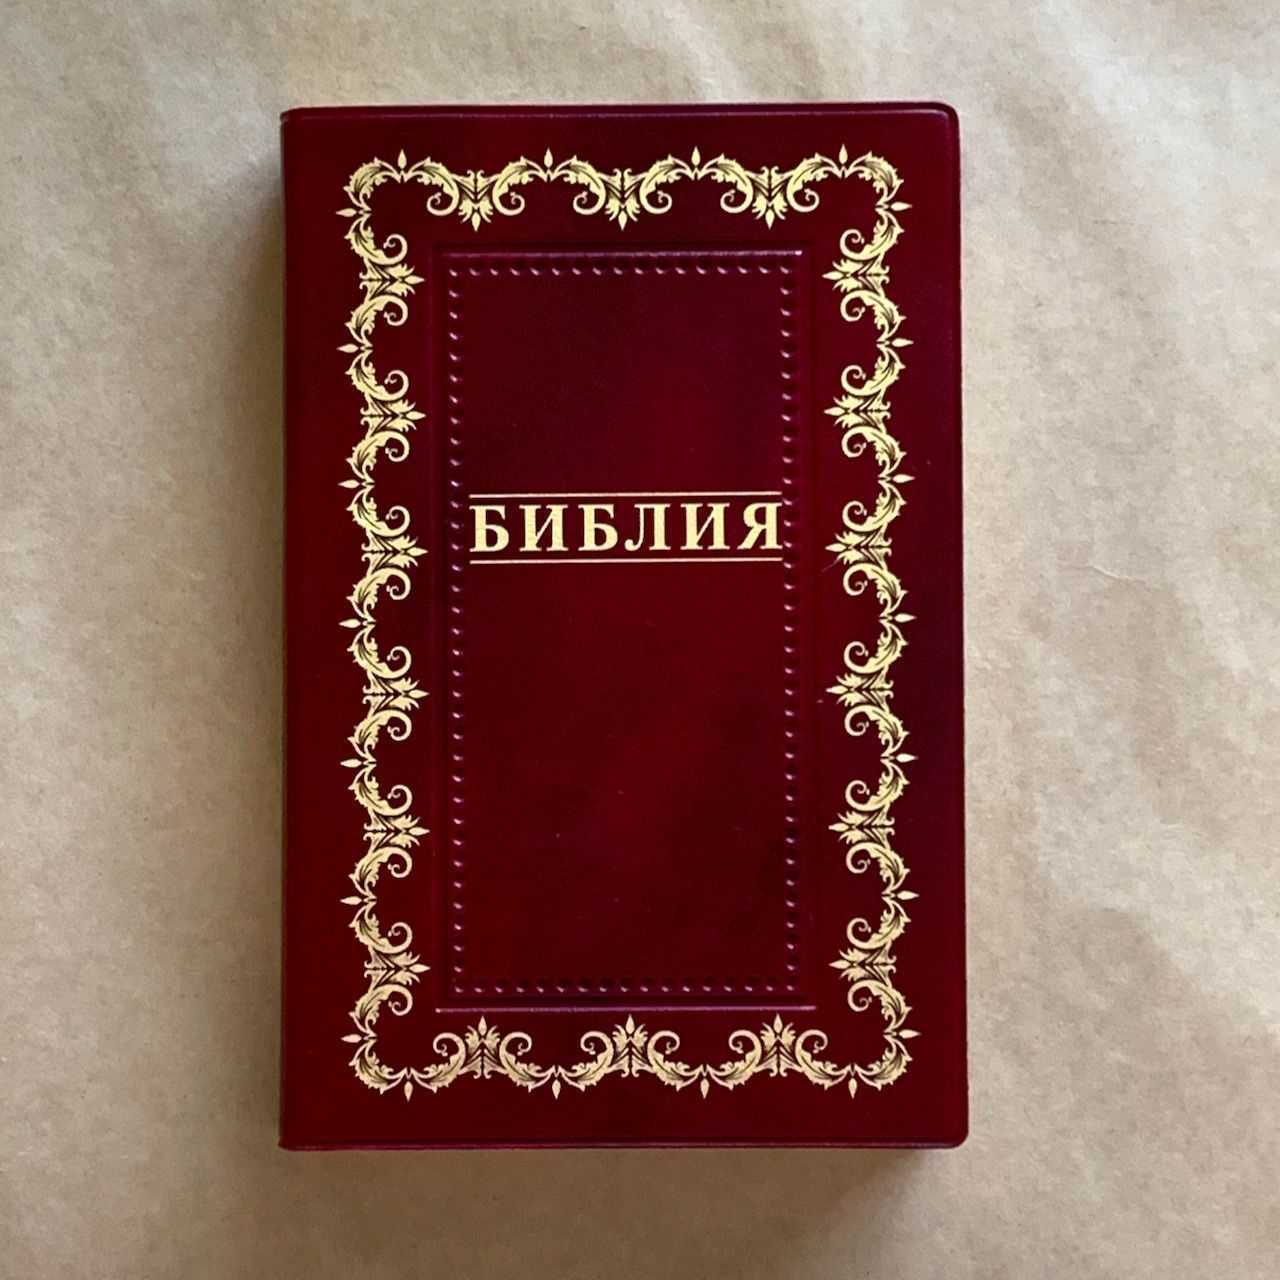 Библия 055 код B2 7073 переплет из искусственной кожи, цвет бордо, дизайн "золотая рамка с орнаментом по контуру", надпись "Библия", средний формат, 140*213 мм, параллельные места по центру страницы, золотой обрез, крупный шрифт